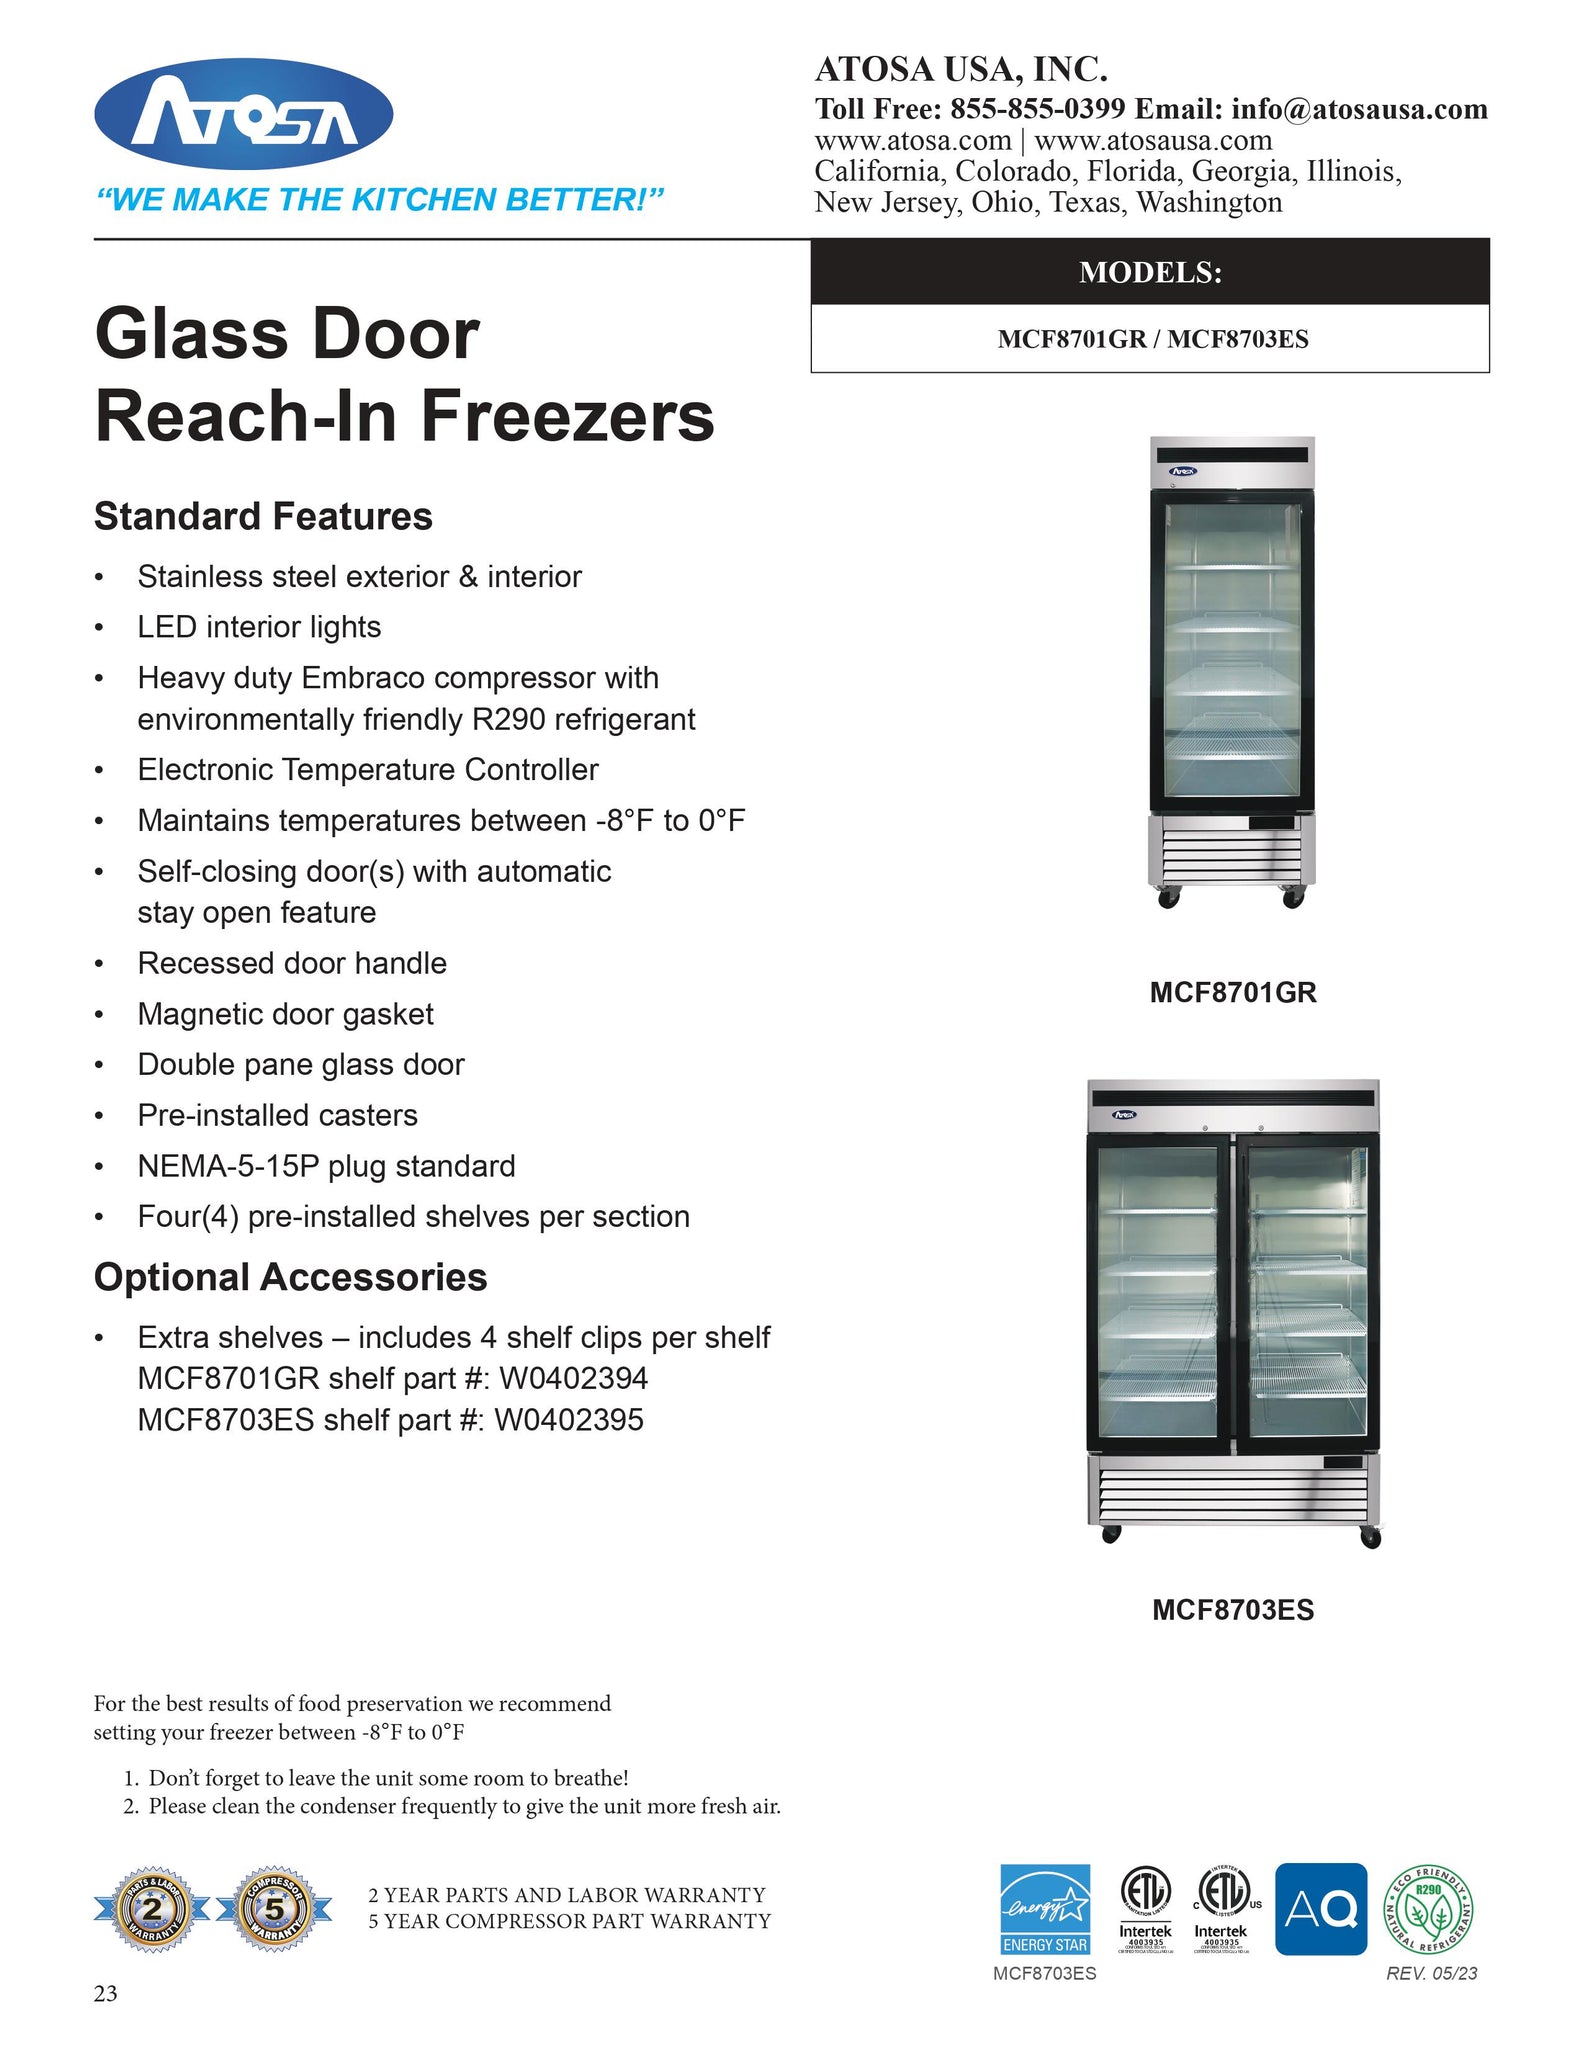 Atosa MCF8703ES 54" Two Section Glass Door Merchandiser Freezer